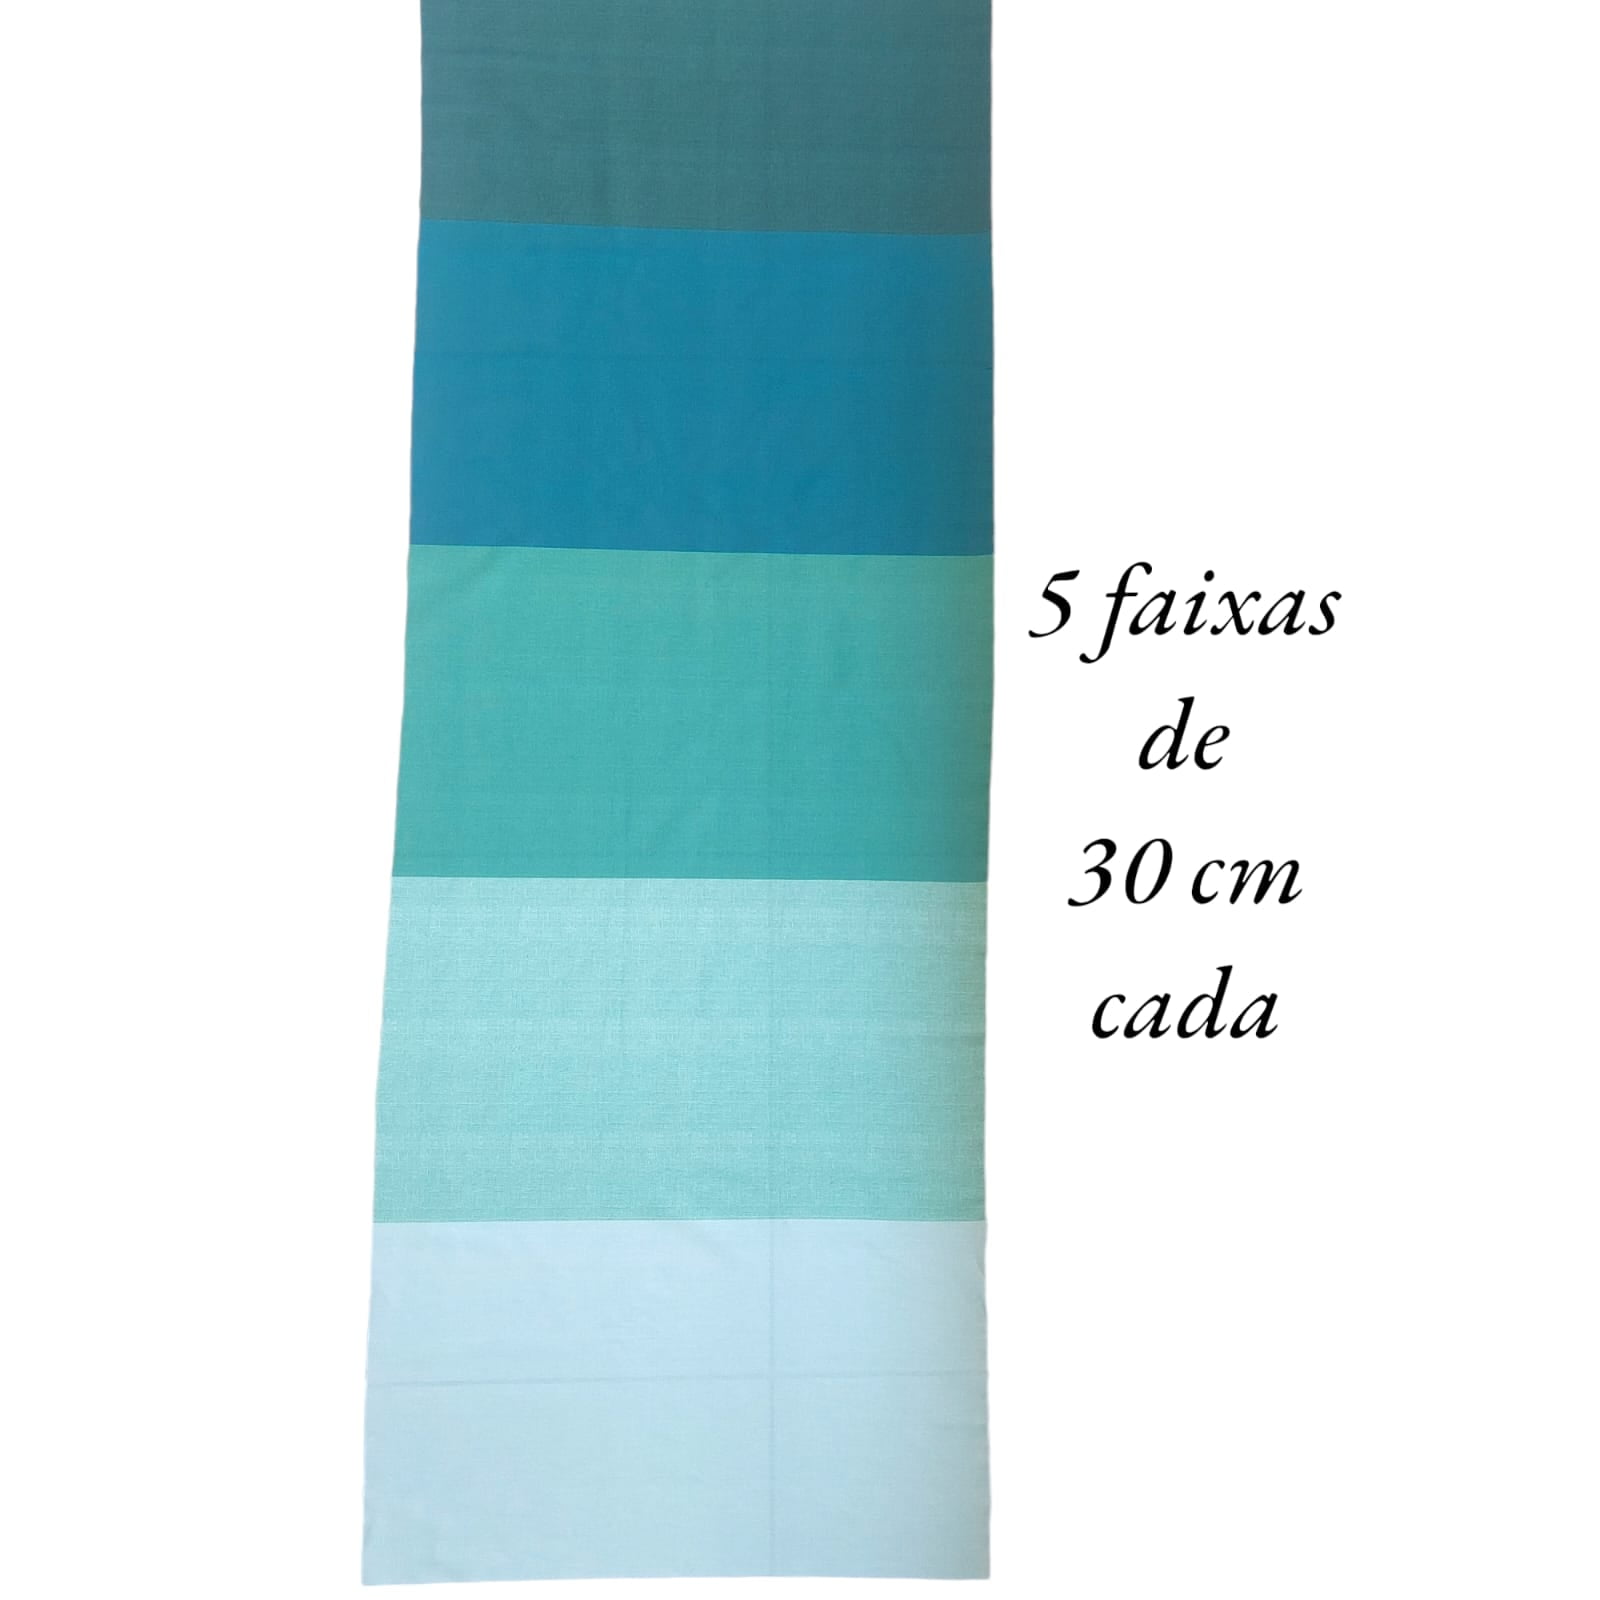 Tecido Tricoline digital - textura verde degradê - Col. Basics for All - Fernando Maluhy  (50x1,50 cm)                              